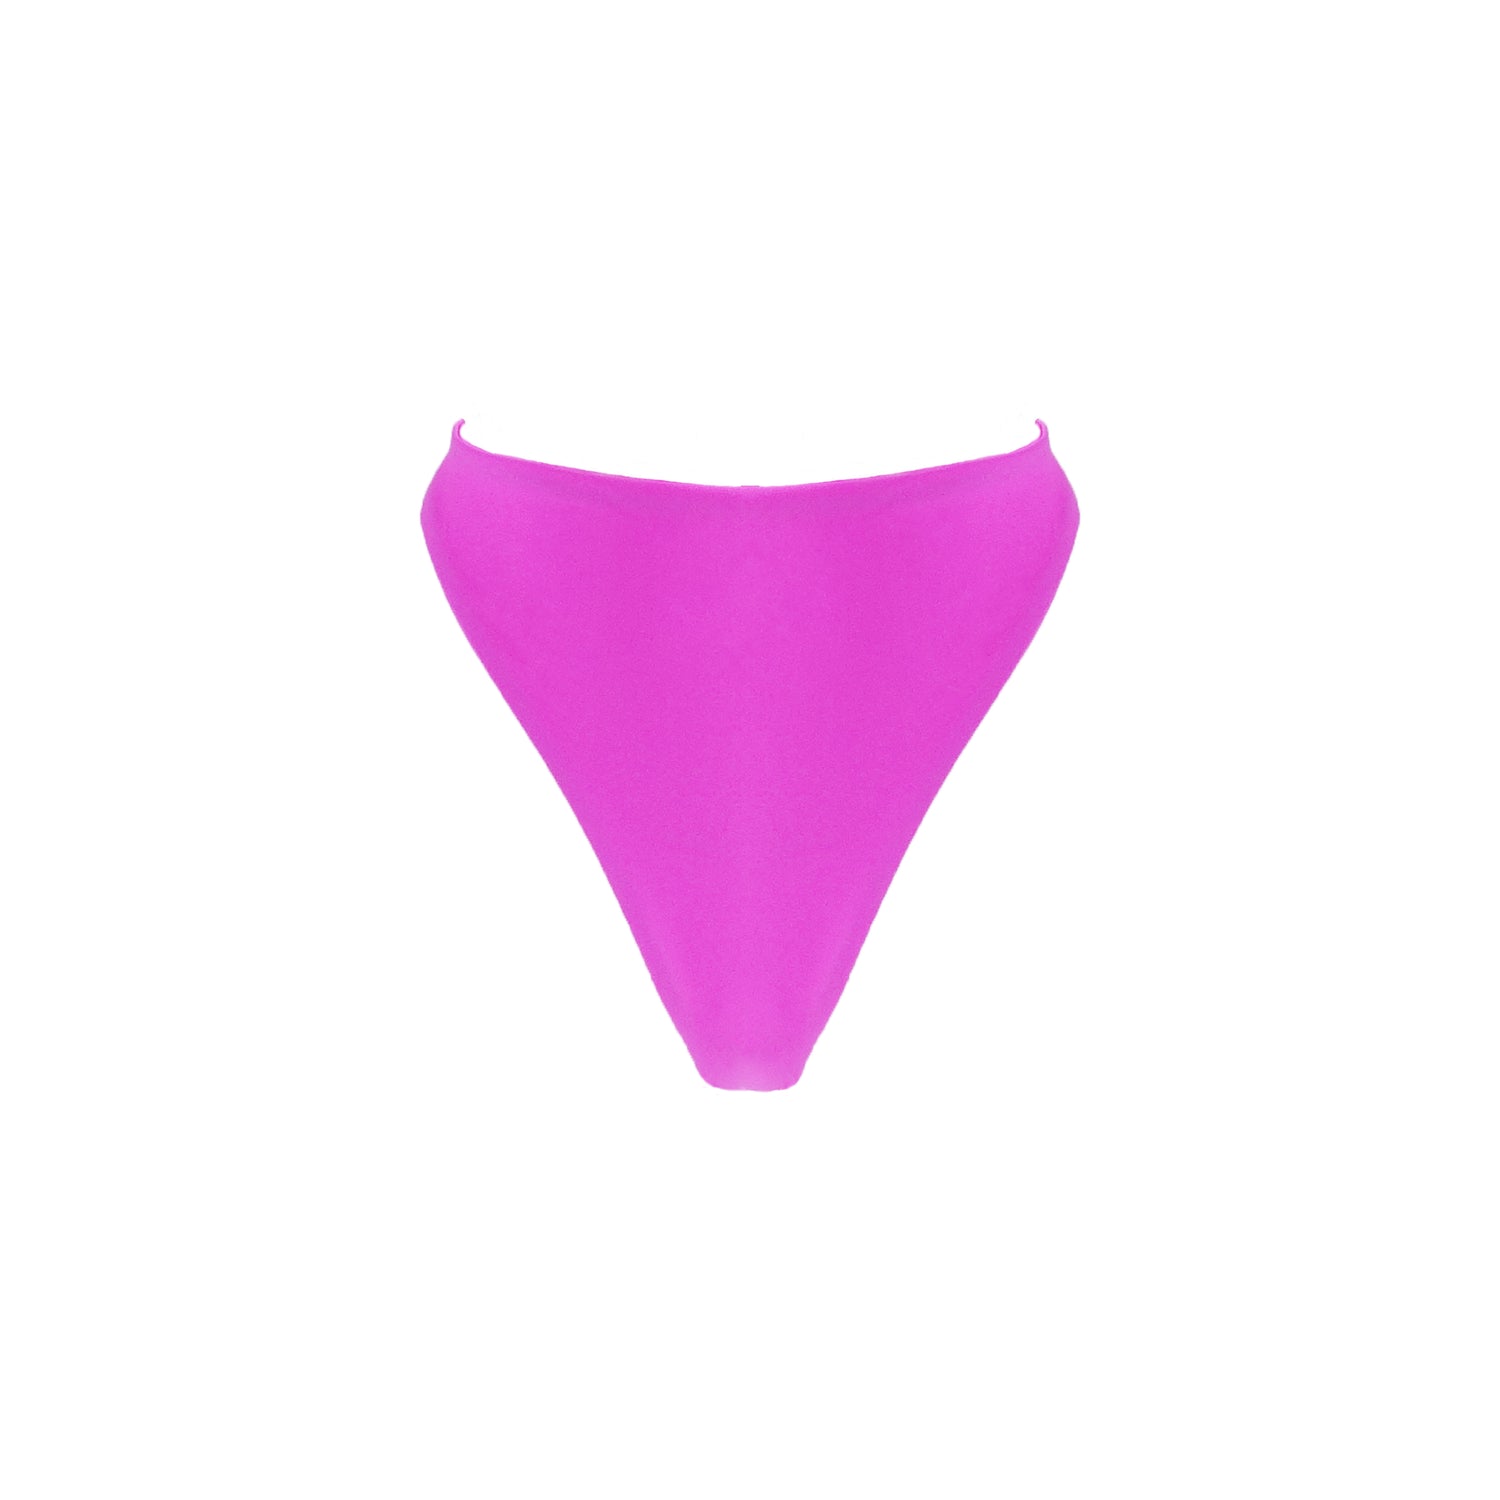 Bright pink high waist thong bikini bottom with high cut legs.